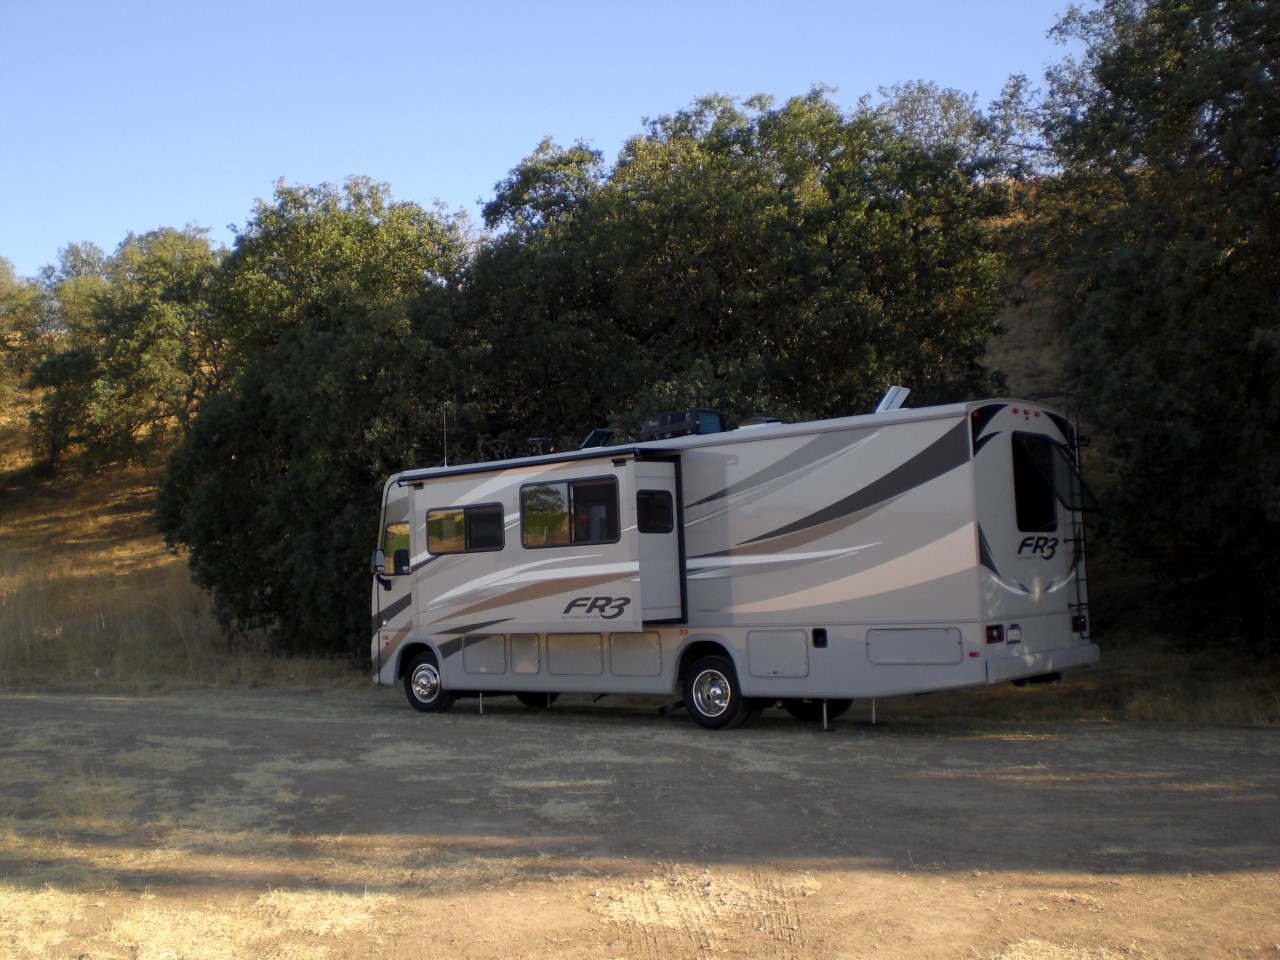 Tobin James Cellars - Harvest Host RV camping area